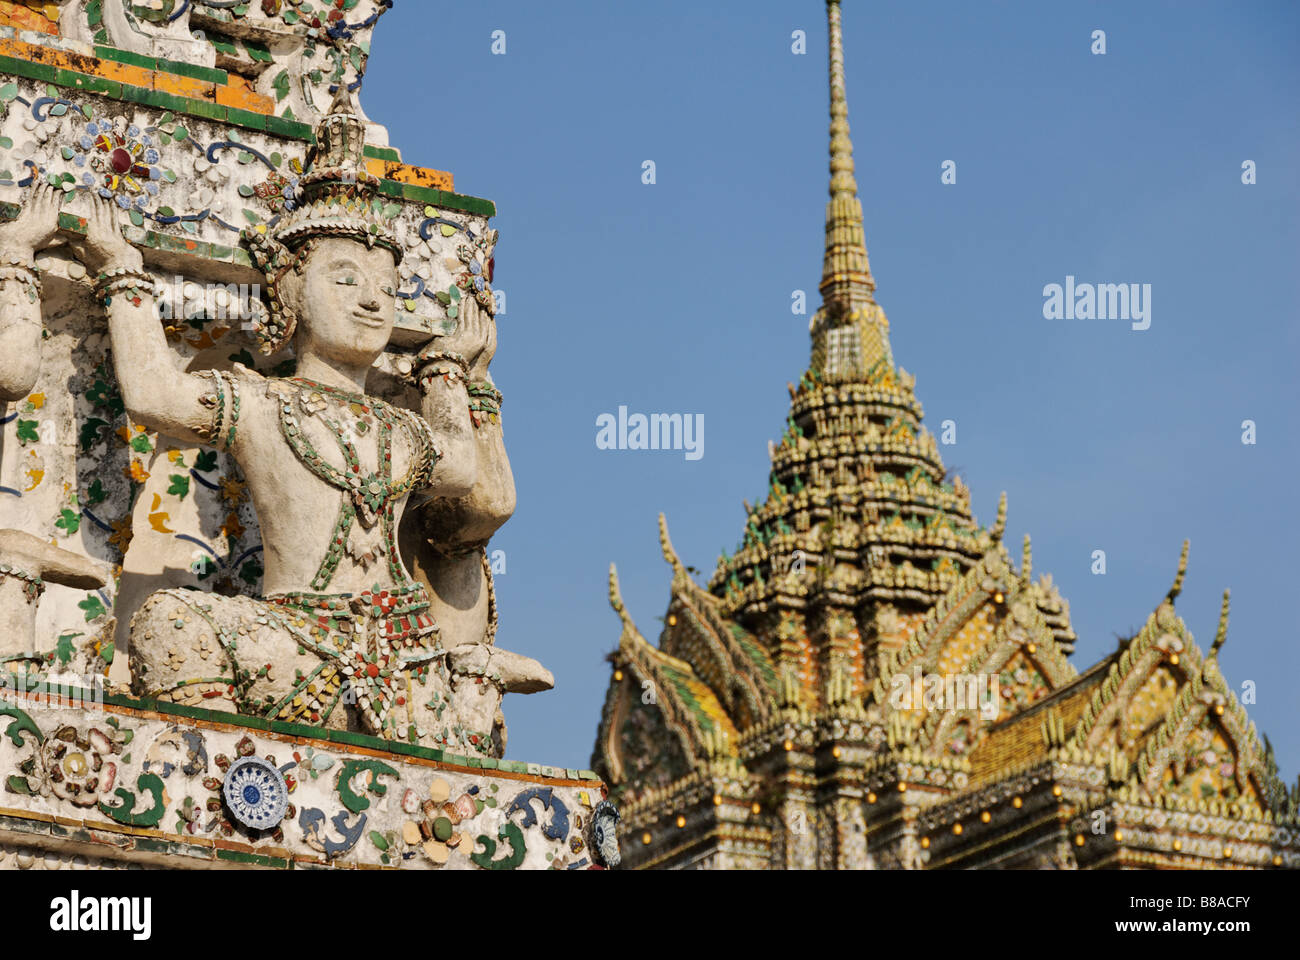 Détail des carreaux de céramique et statue - Wat Arun temple bouddhiste à Bangkok. Thaïlande Banque D'Images